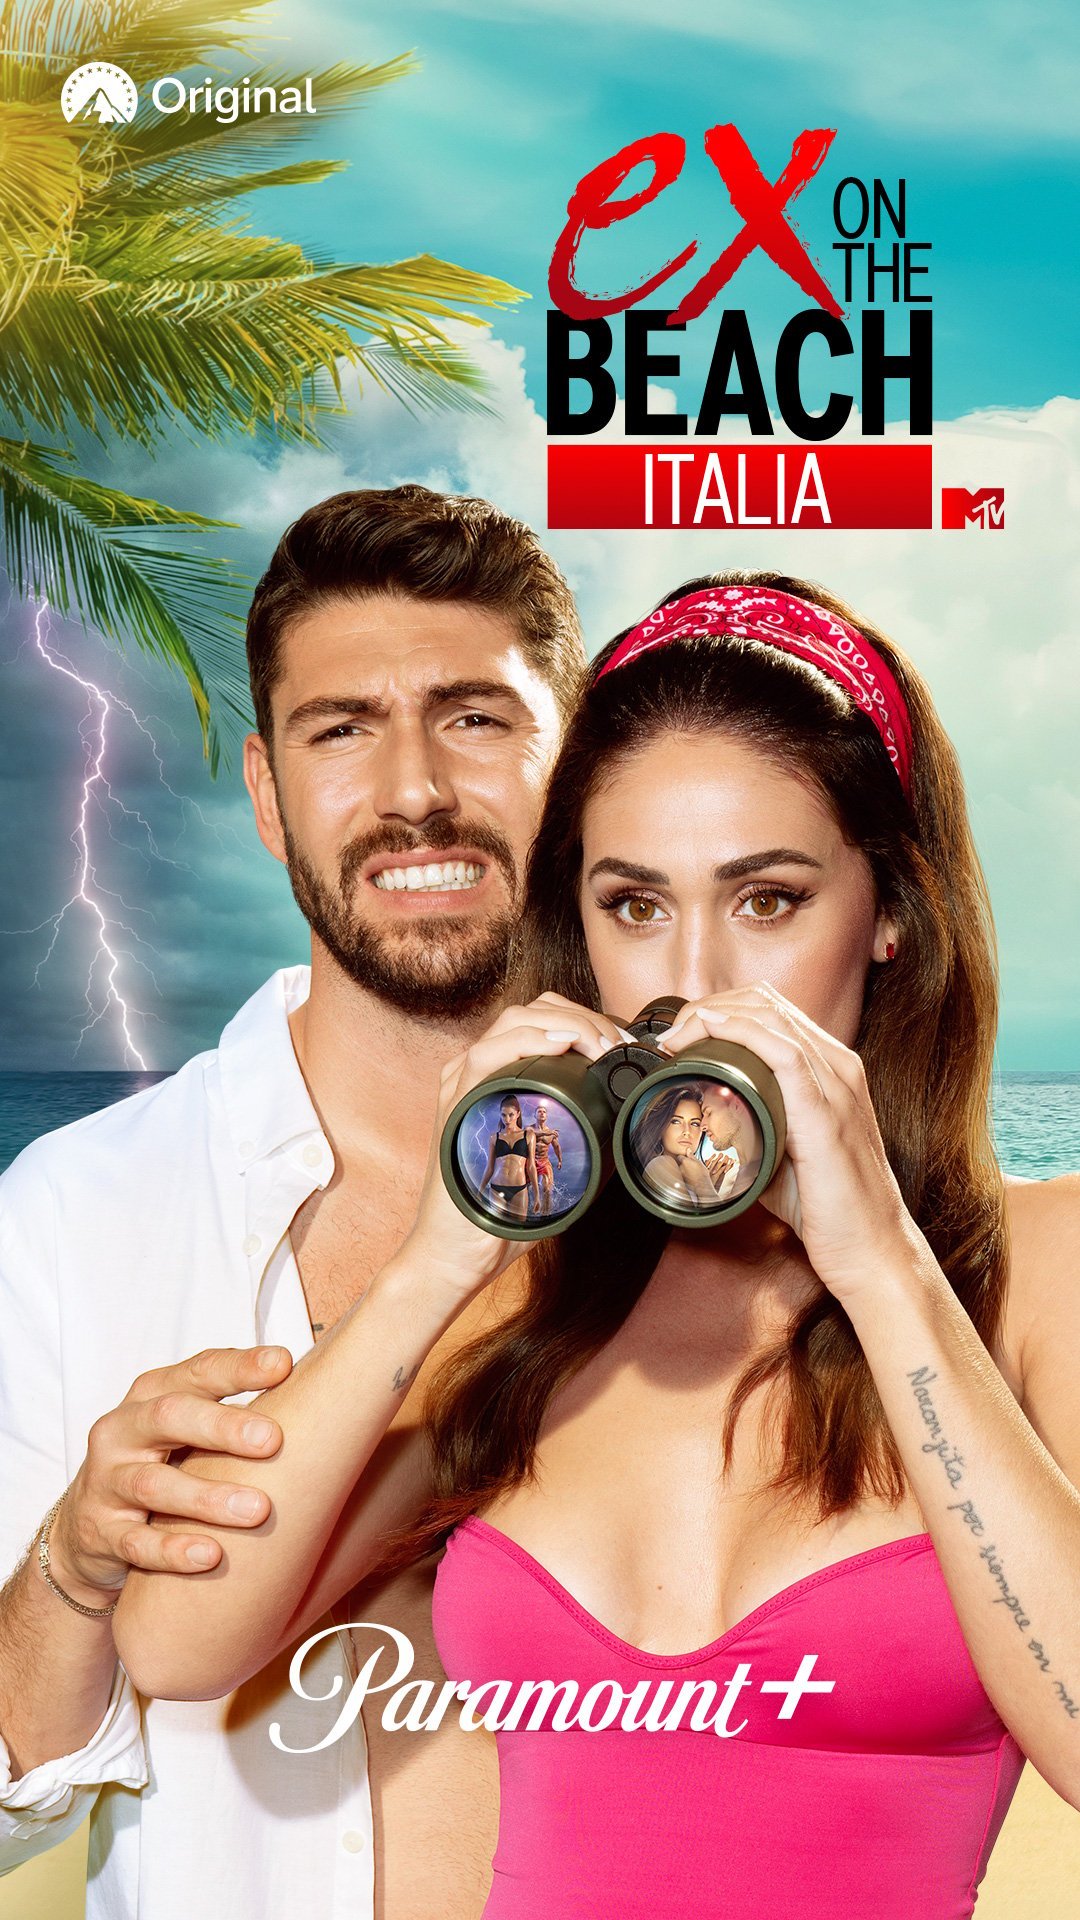 Ex on the Beach Italy 4 | Hivatalos plakát | Ignazio Moser és Cecilia Rodriguez távcsővel